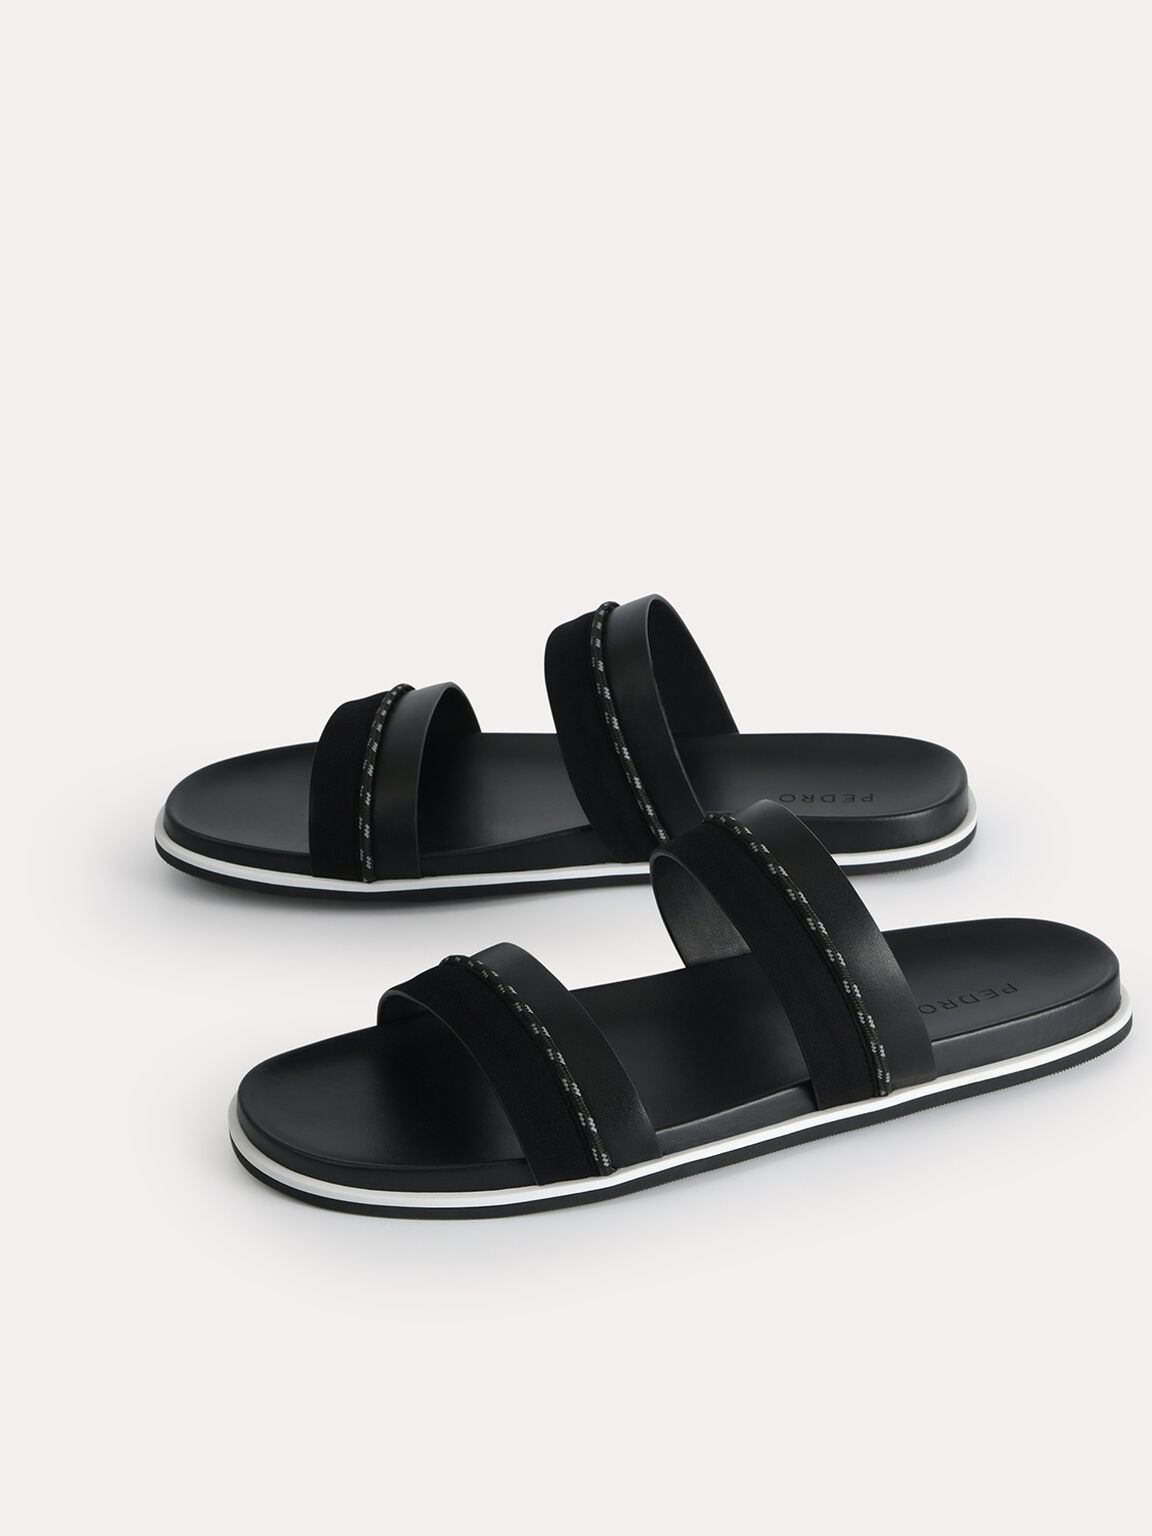 Double Strap Sandals, Black, hi-res